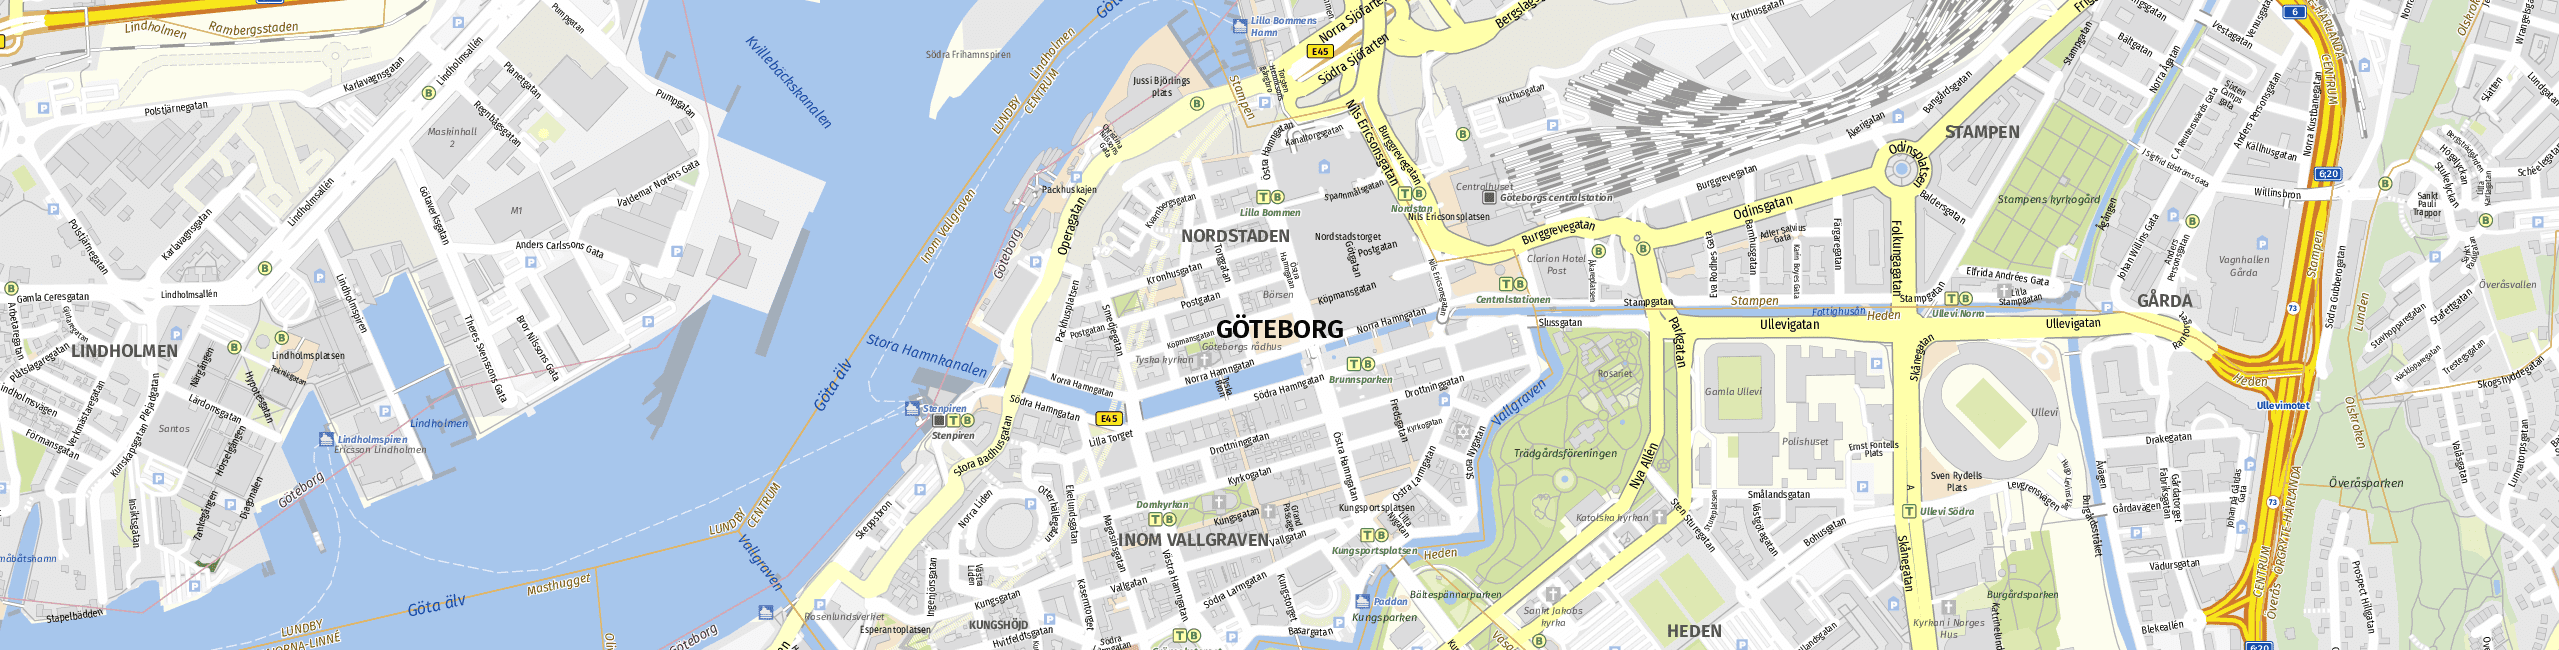 Stadtplan Gothenburg zum Downloaden.